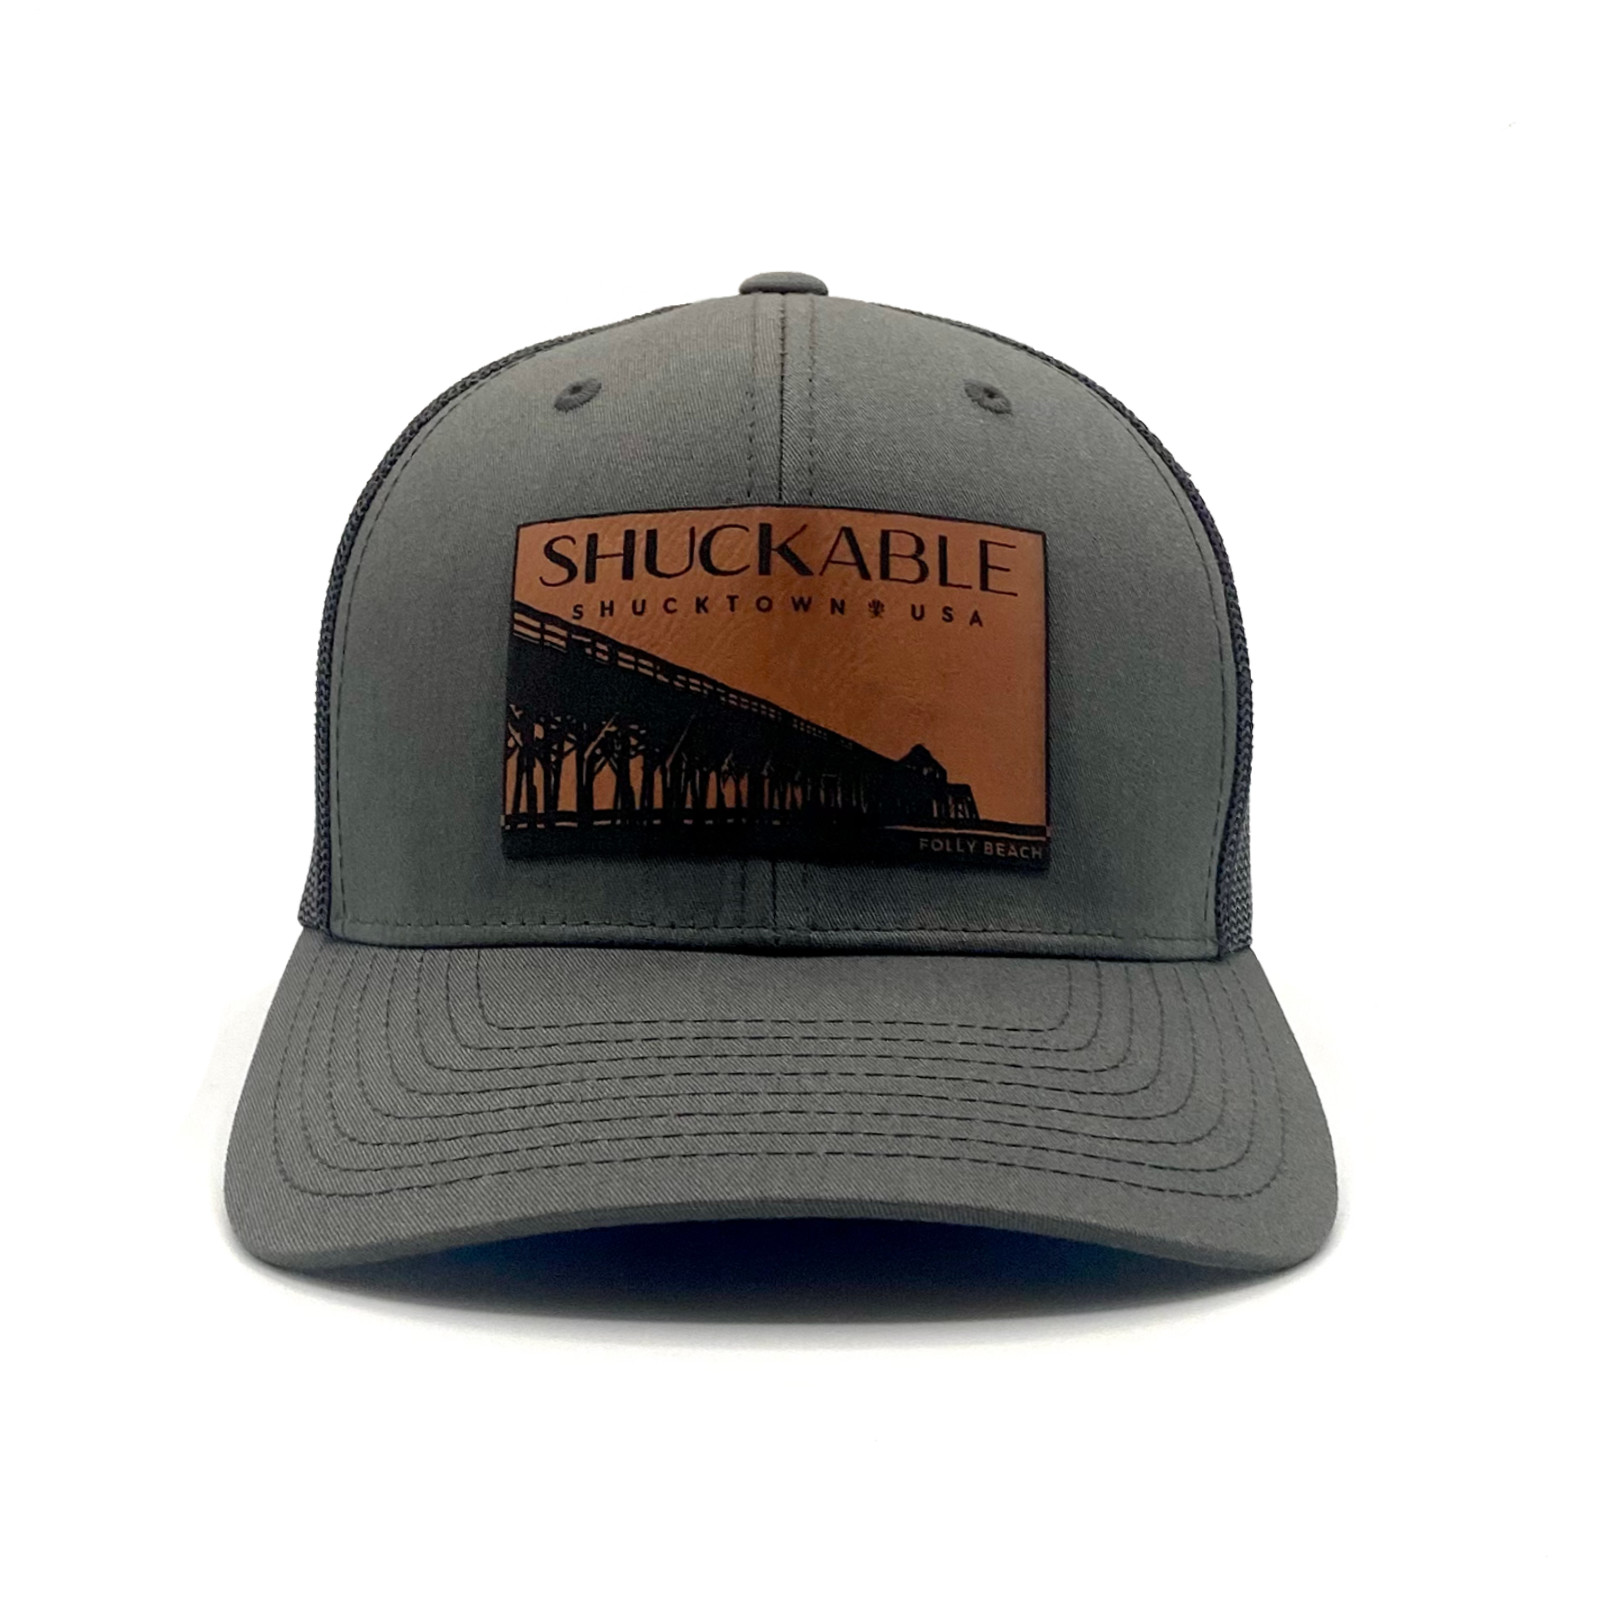 Folly Beach Shuckable SnapBack Hat